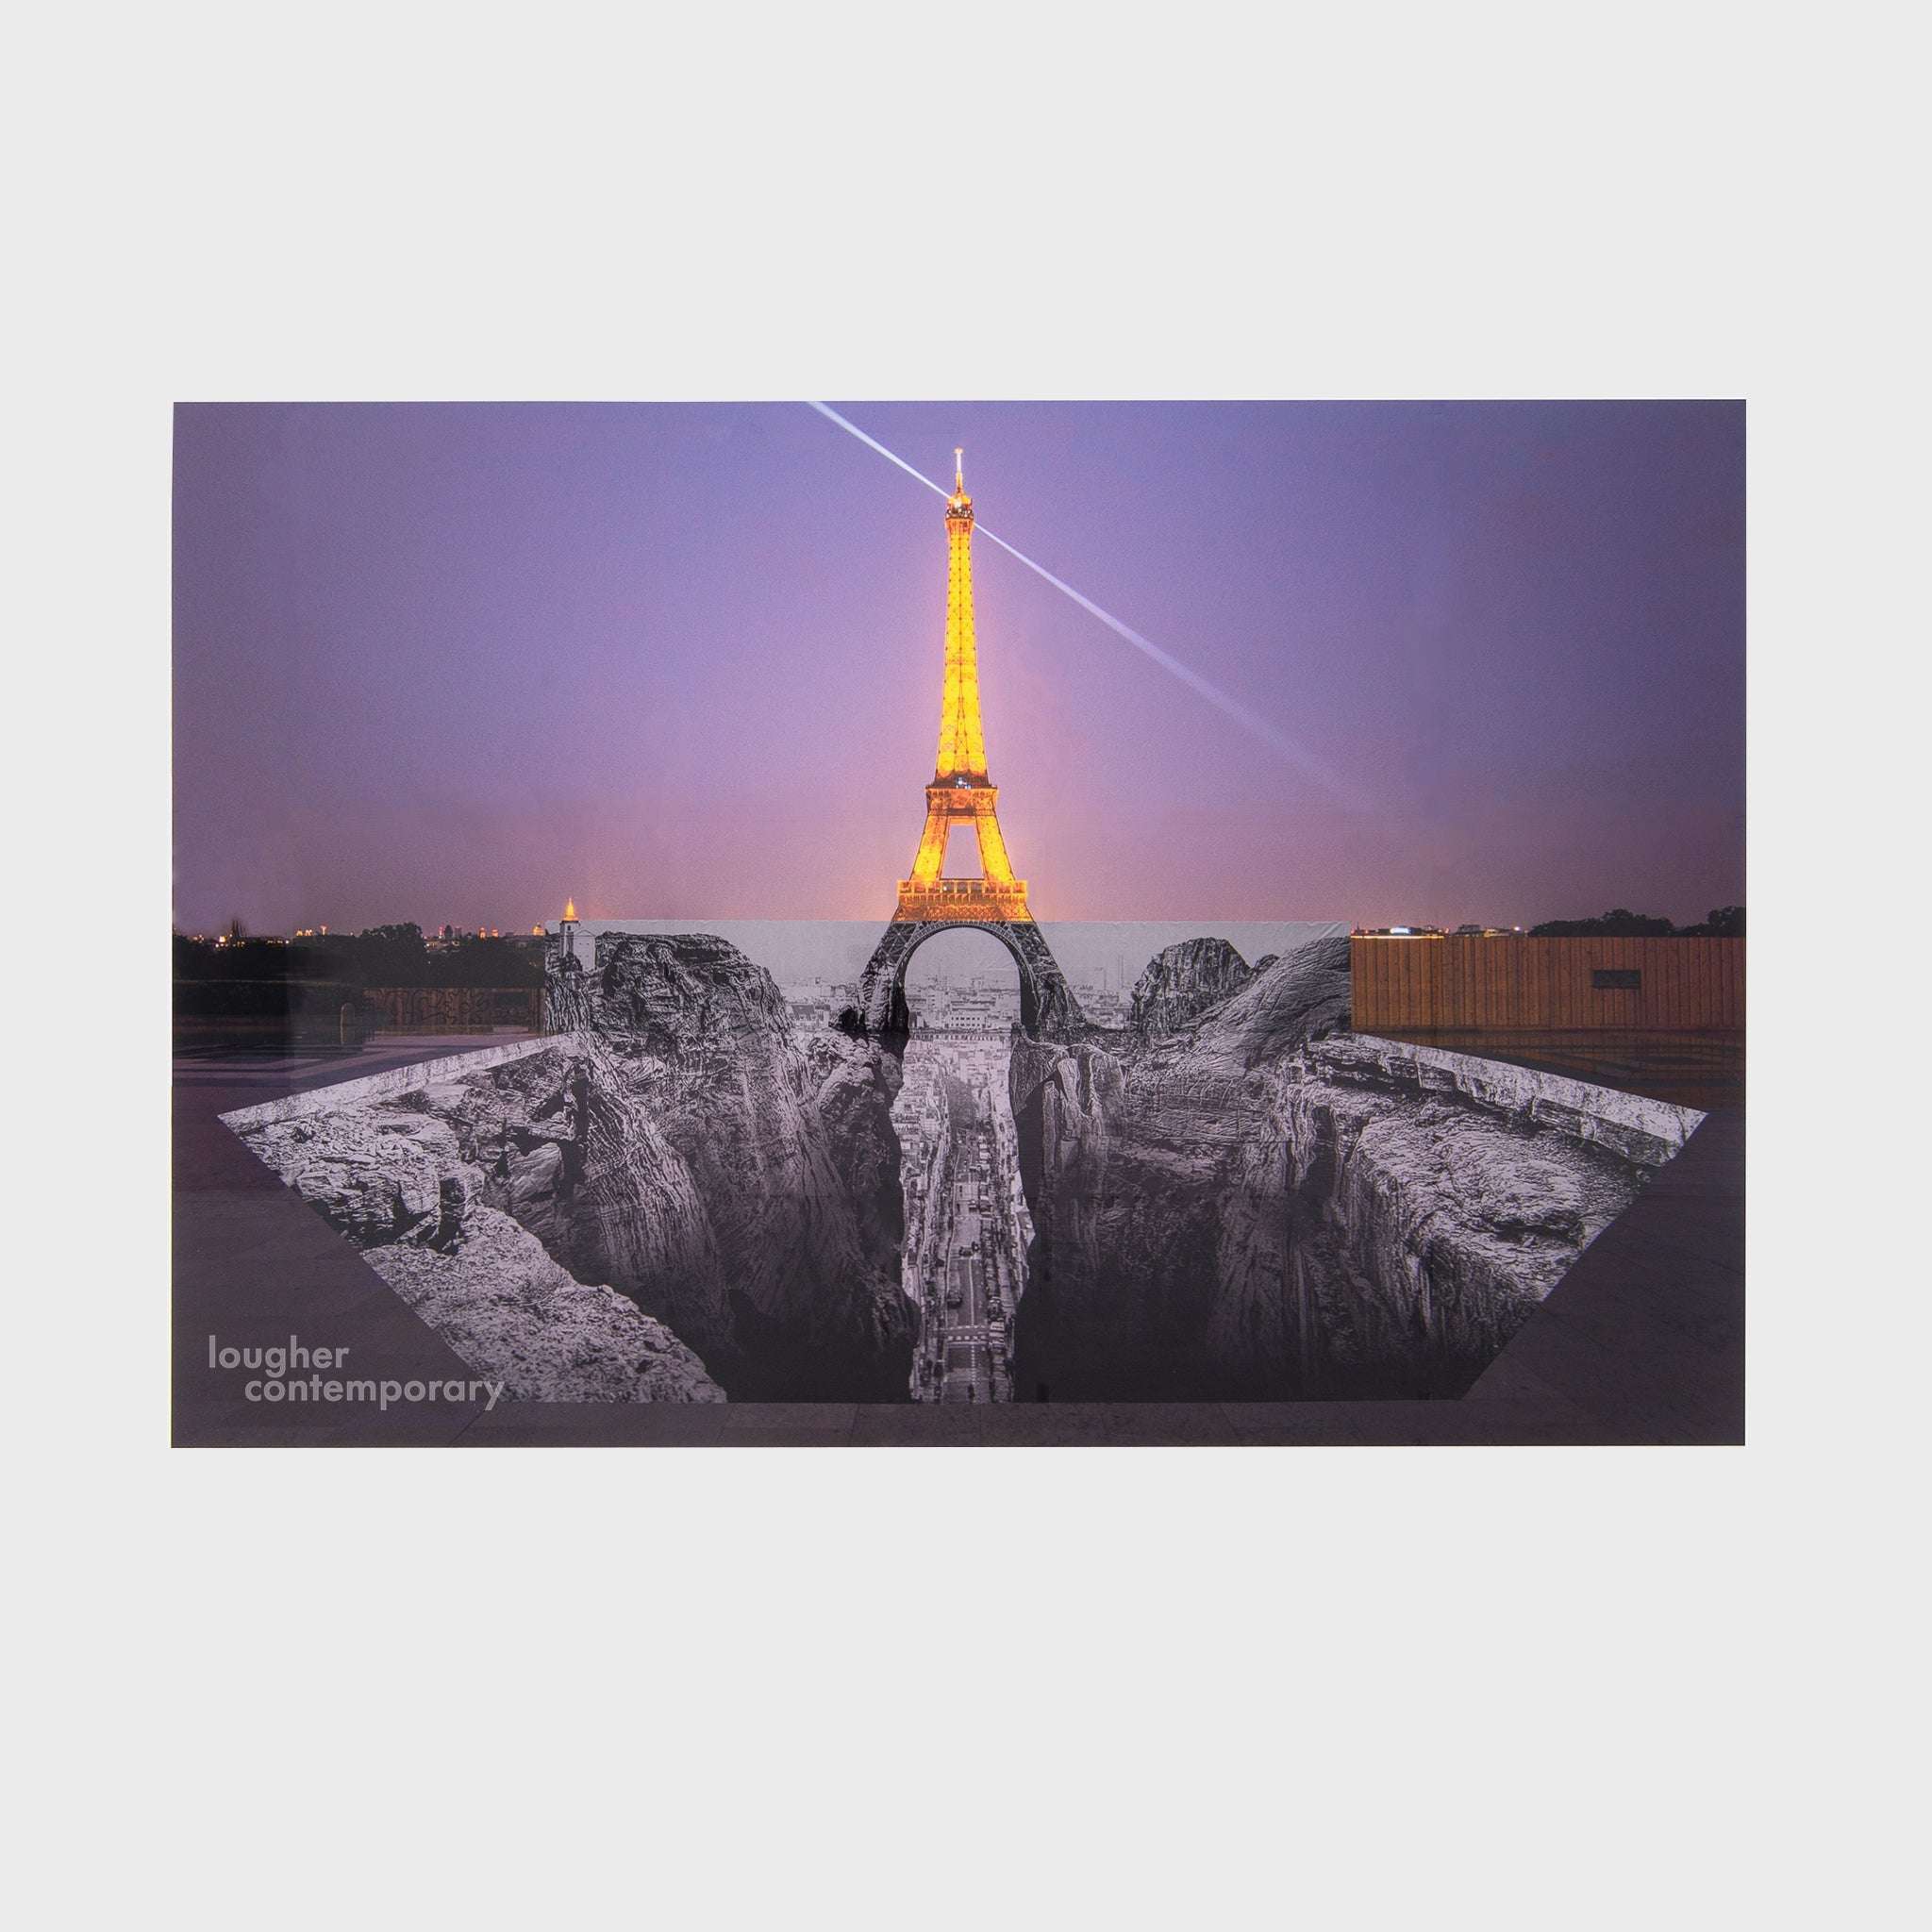 JR, Trompe l'oeil, Les Falaises du Trocadéro, 25 mai 2021, 22h18, Paris, France, 2021, 2021 For Sale - Lougher Contemporary